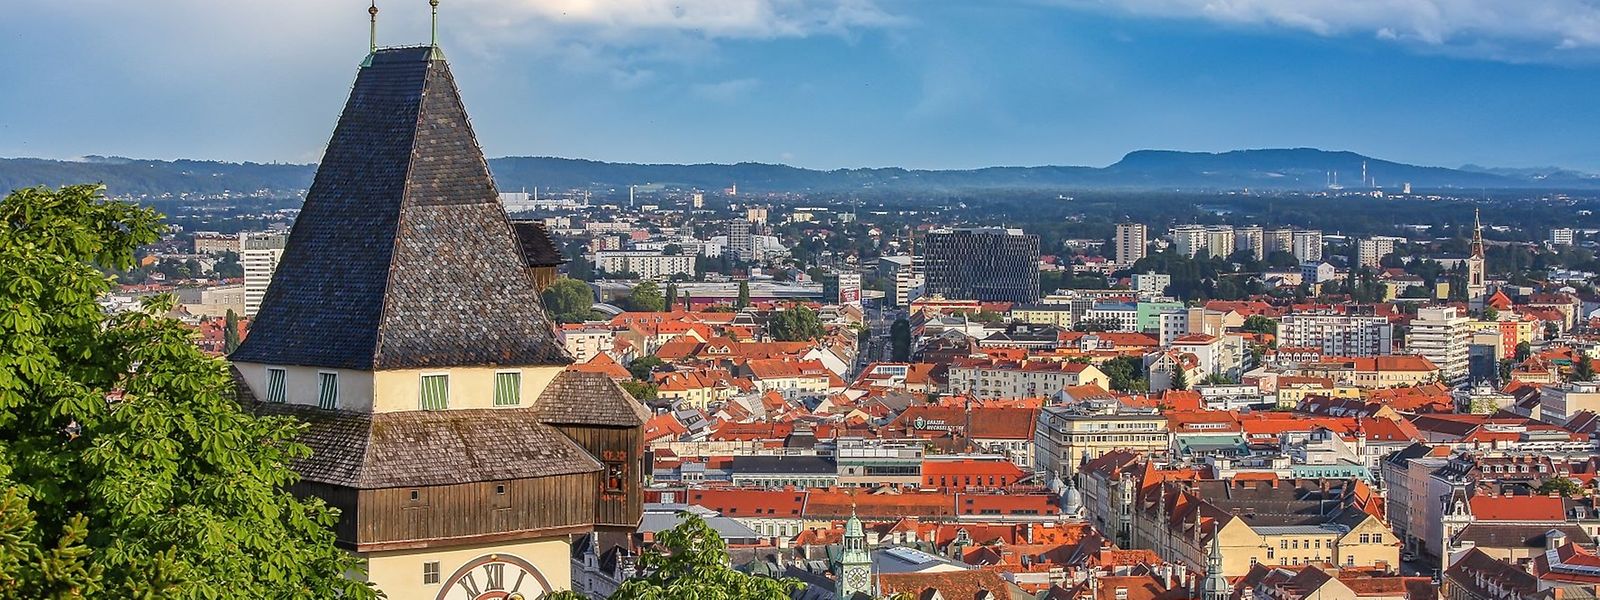 Die Stadt Graz ist kulturelles und wirtschaftliches Zentrum Südösterreichs – mit allen Licht- und Schattenseiten.